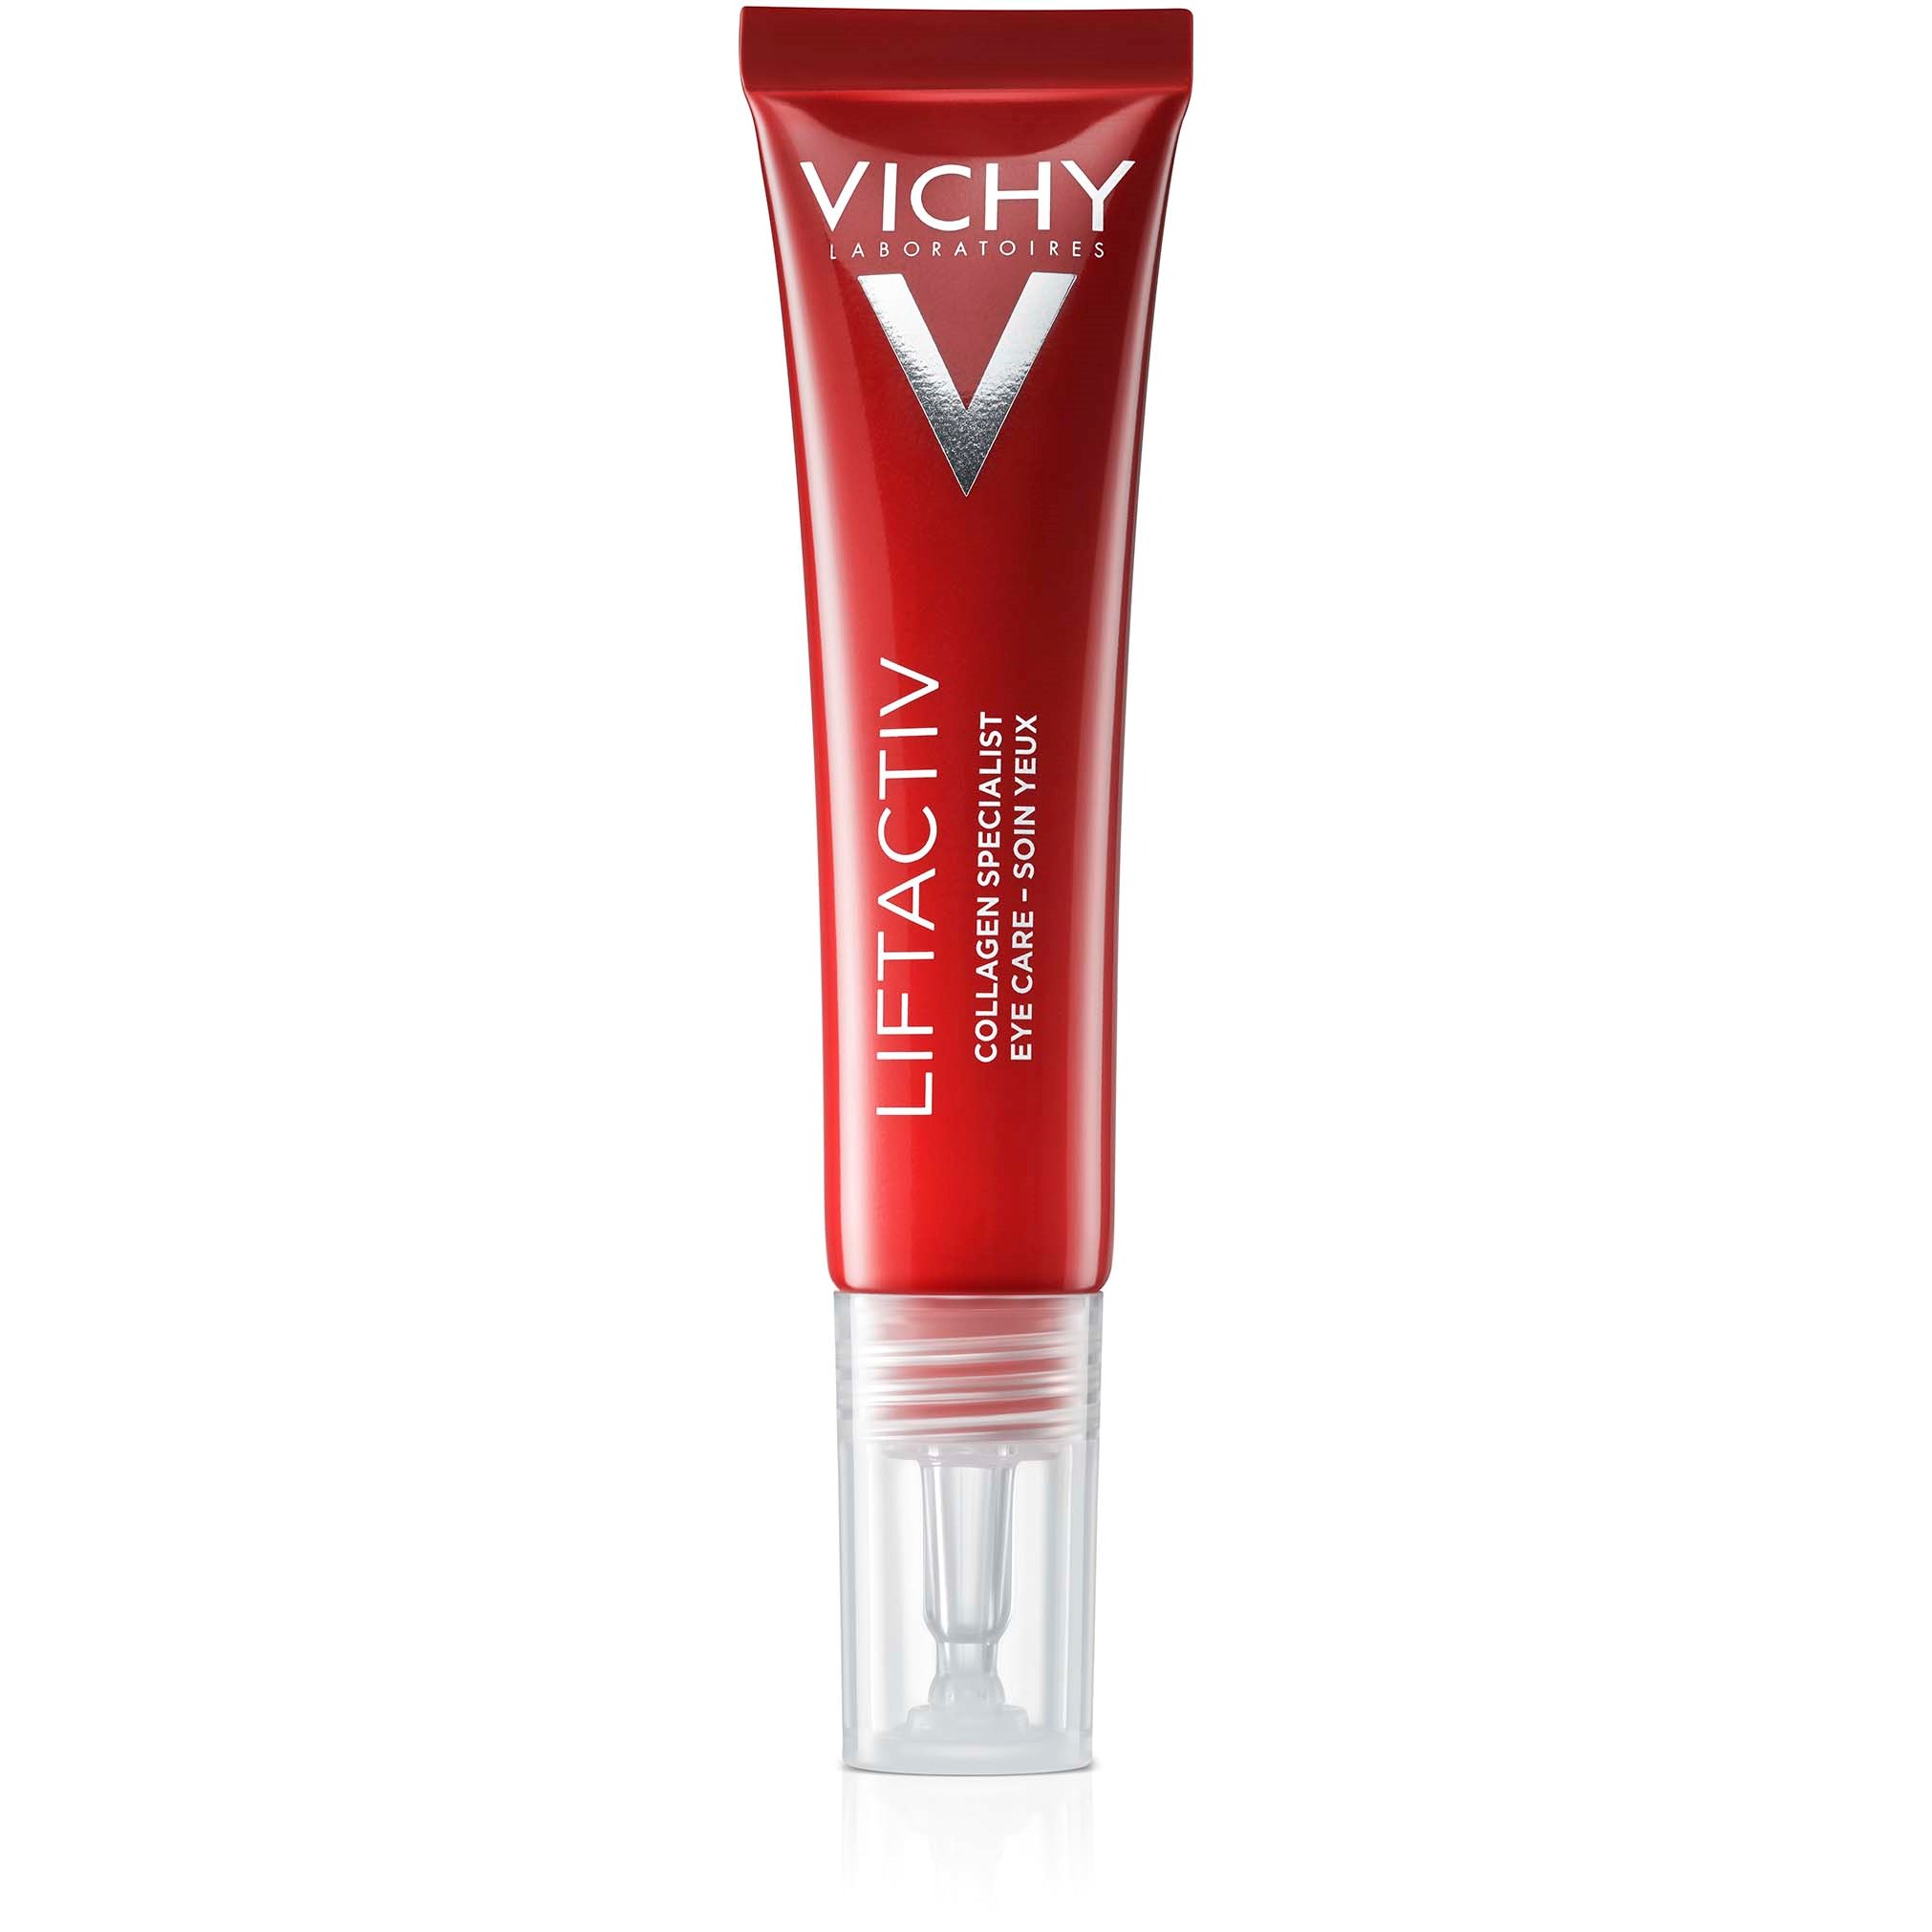 Bilde av Vichy Liftactiv Collagen Specialist Eyecare 15 Ml